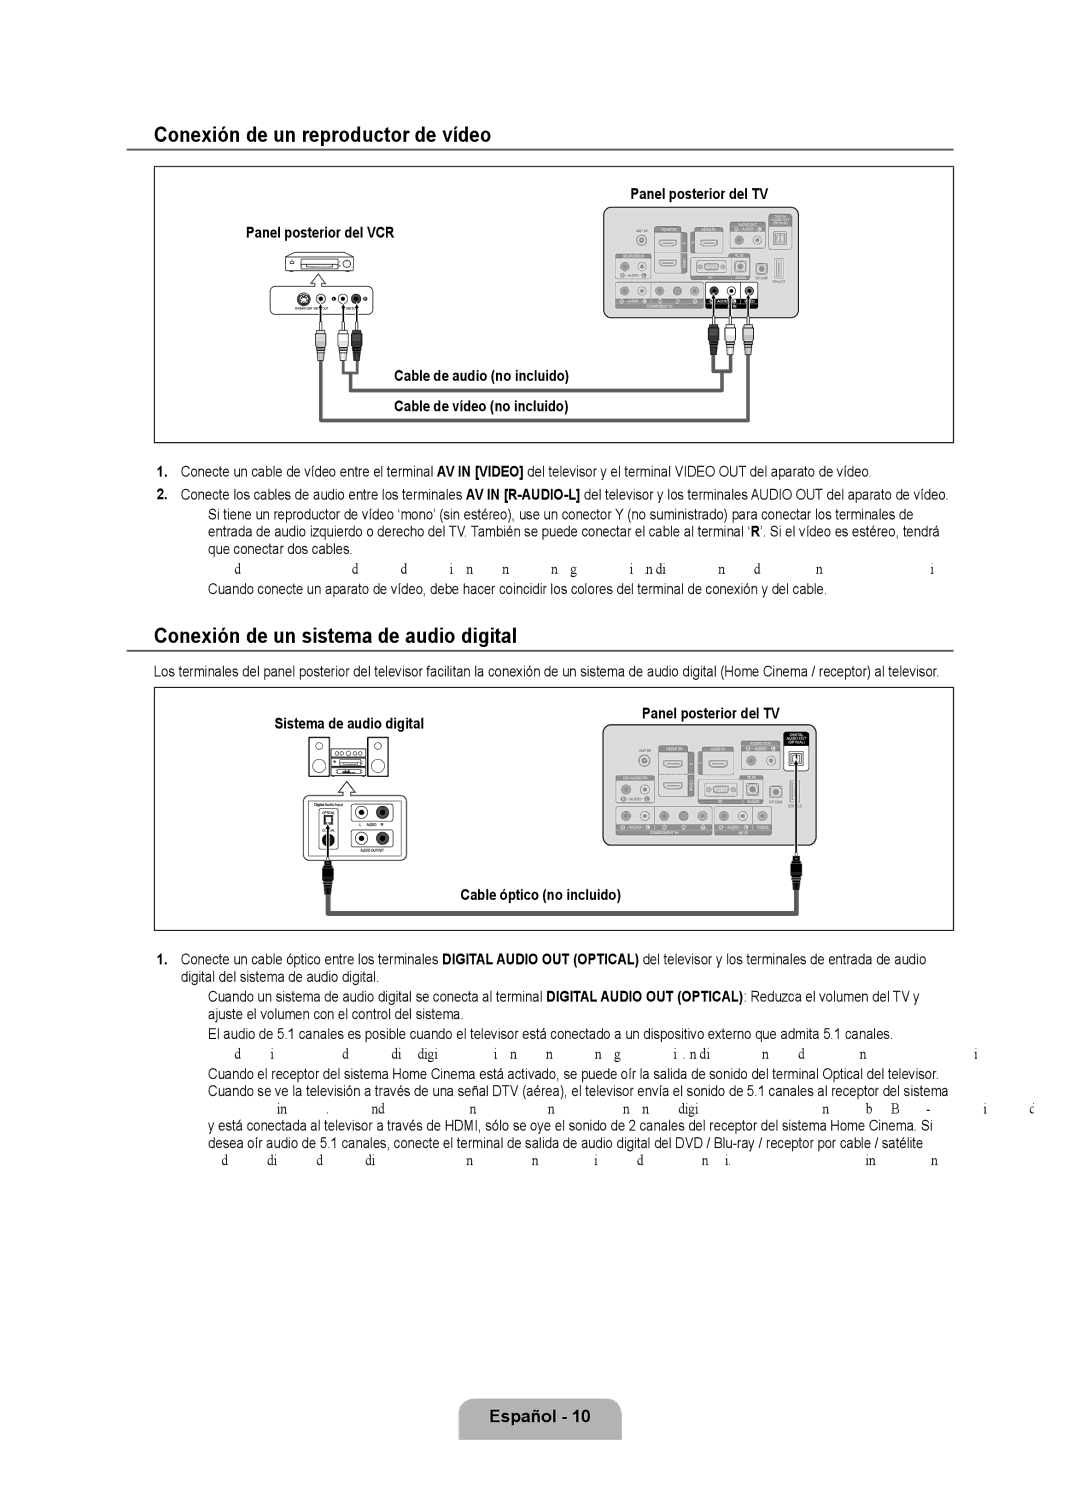 Samsung LN40B530 Conexión de un reproductor de vídeo, Conexión de un sistema de audio digital, Sistema de audio digital 